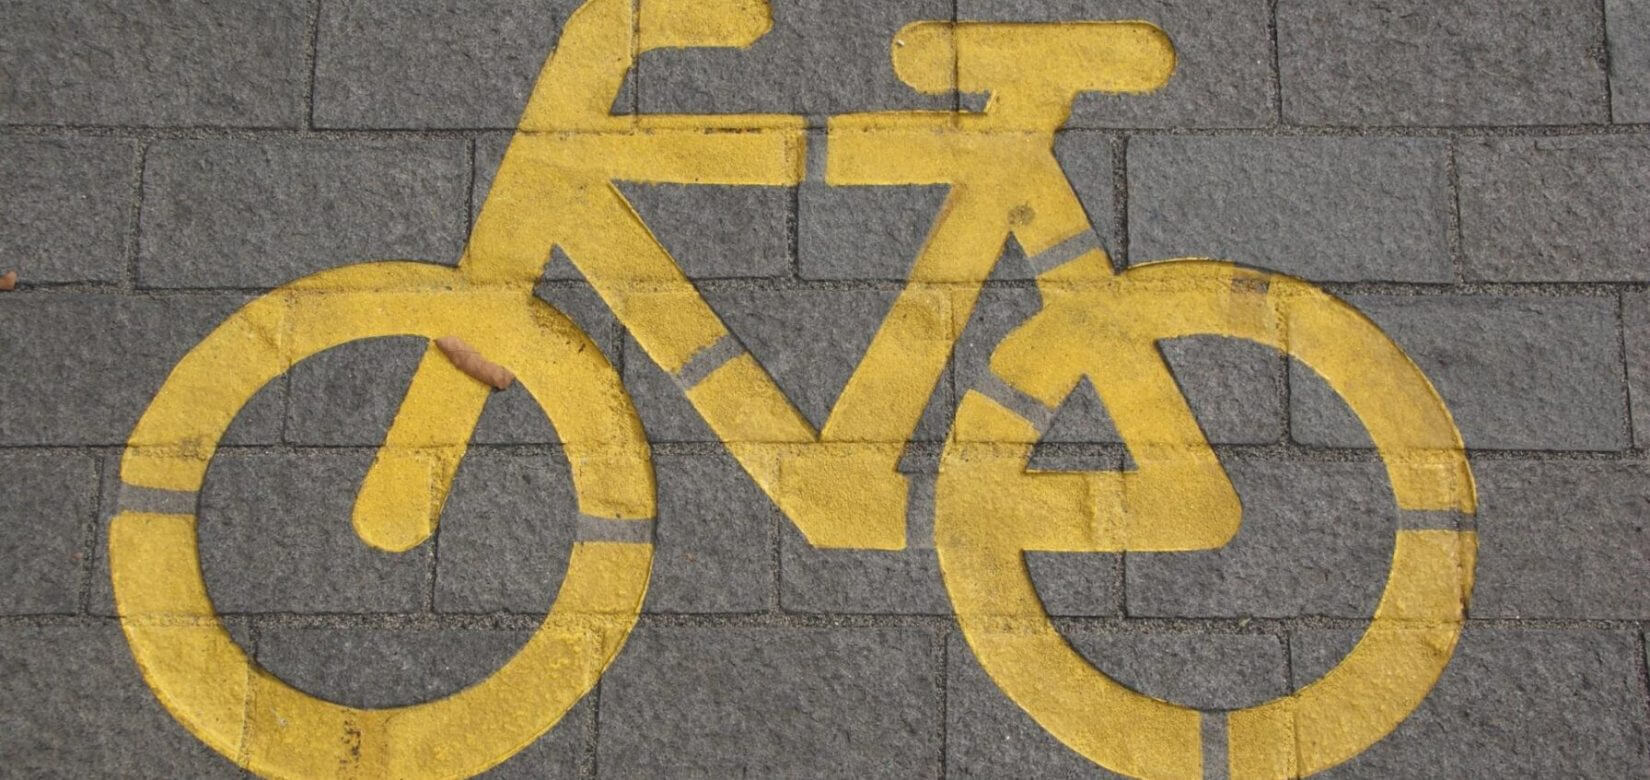 #WorldBicycleDay: 6 tips για να γιορτάστε με τα παιδιά σας την Παγκόσμια Ημέρα Ποδηλάτου